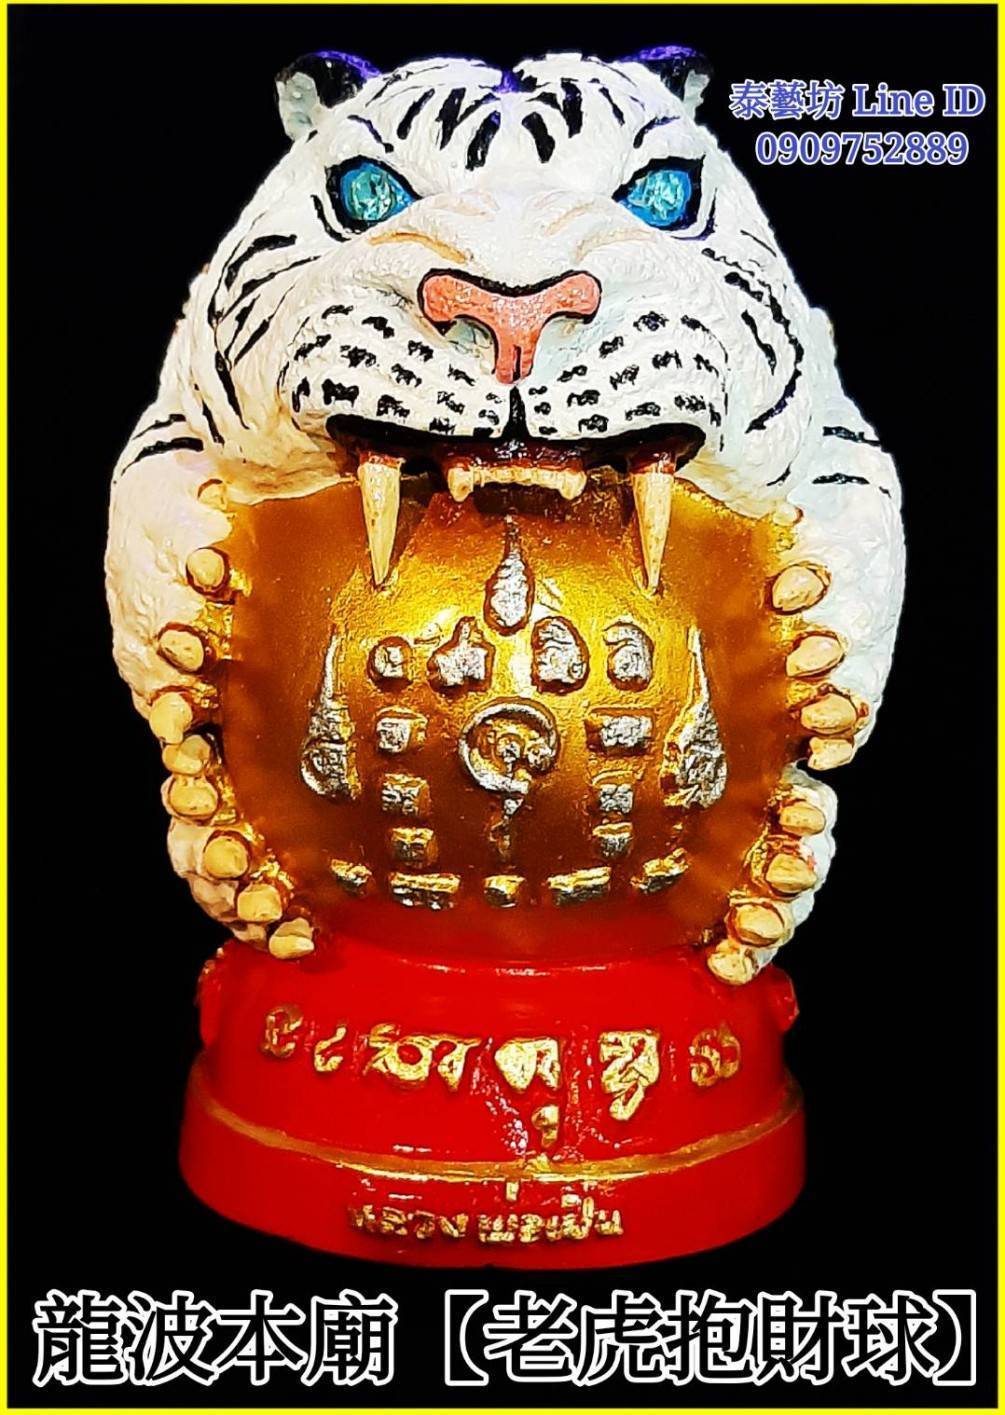 【 老虎-抱財球 】 是龍波本廟的招牌聖物 ~ 可以擺放在家中財位 / 辦公室中 / 收銀機旁 ... 等處，平時可以點上香 / 供水 / 蠟燭 ... 等 ~ 即可為我們帶來絕佳的財運